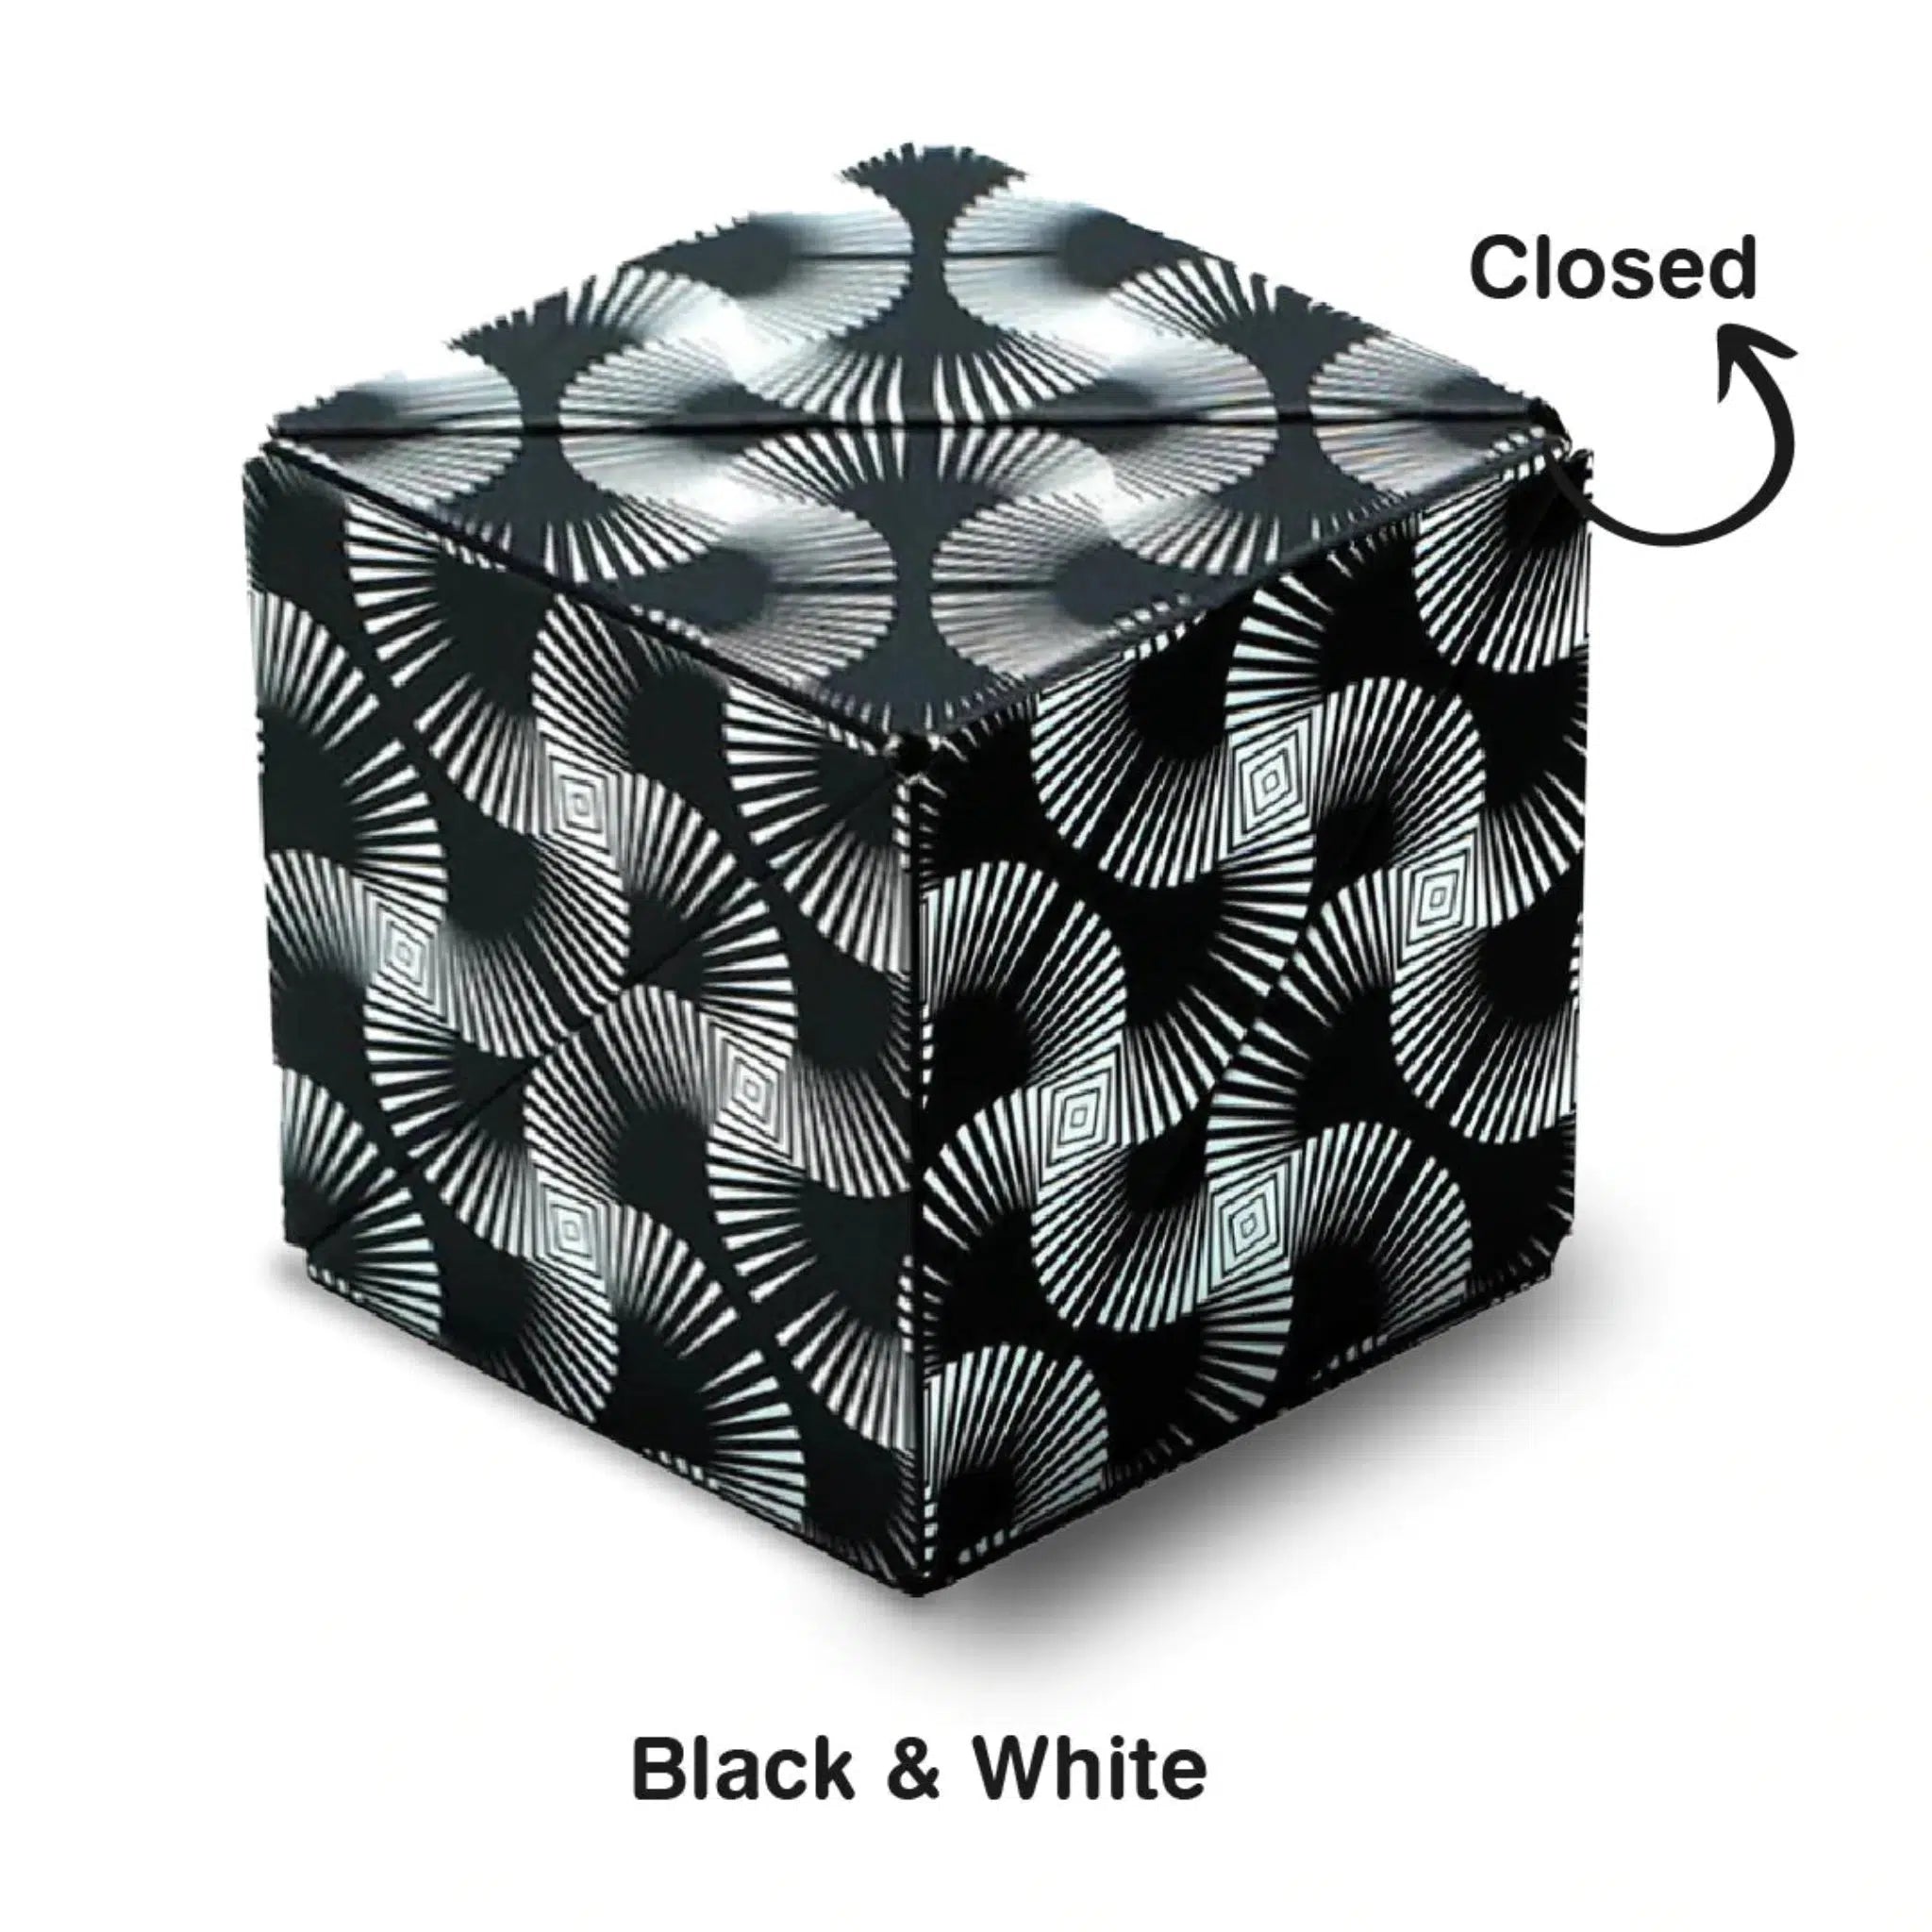 Shashibo Shashibo Cube noir/blanc